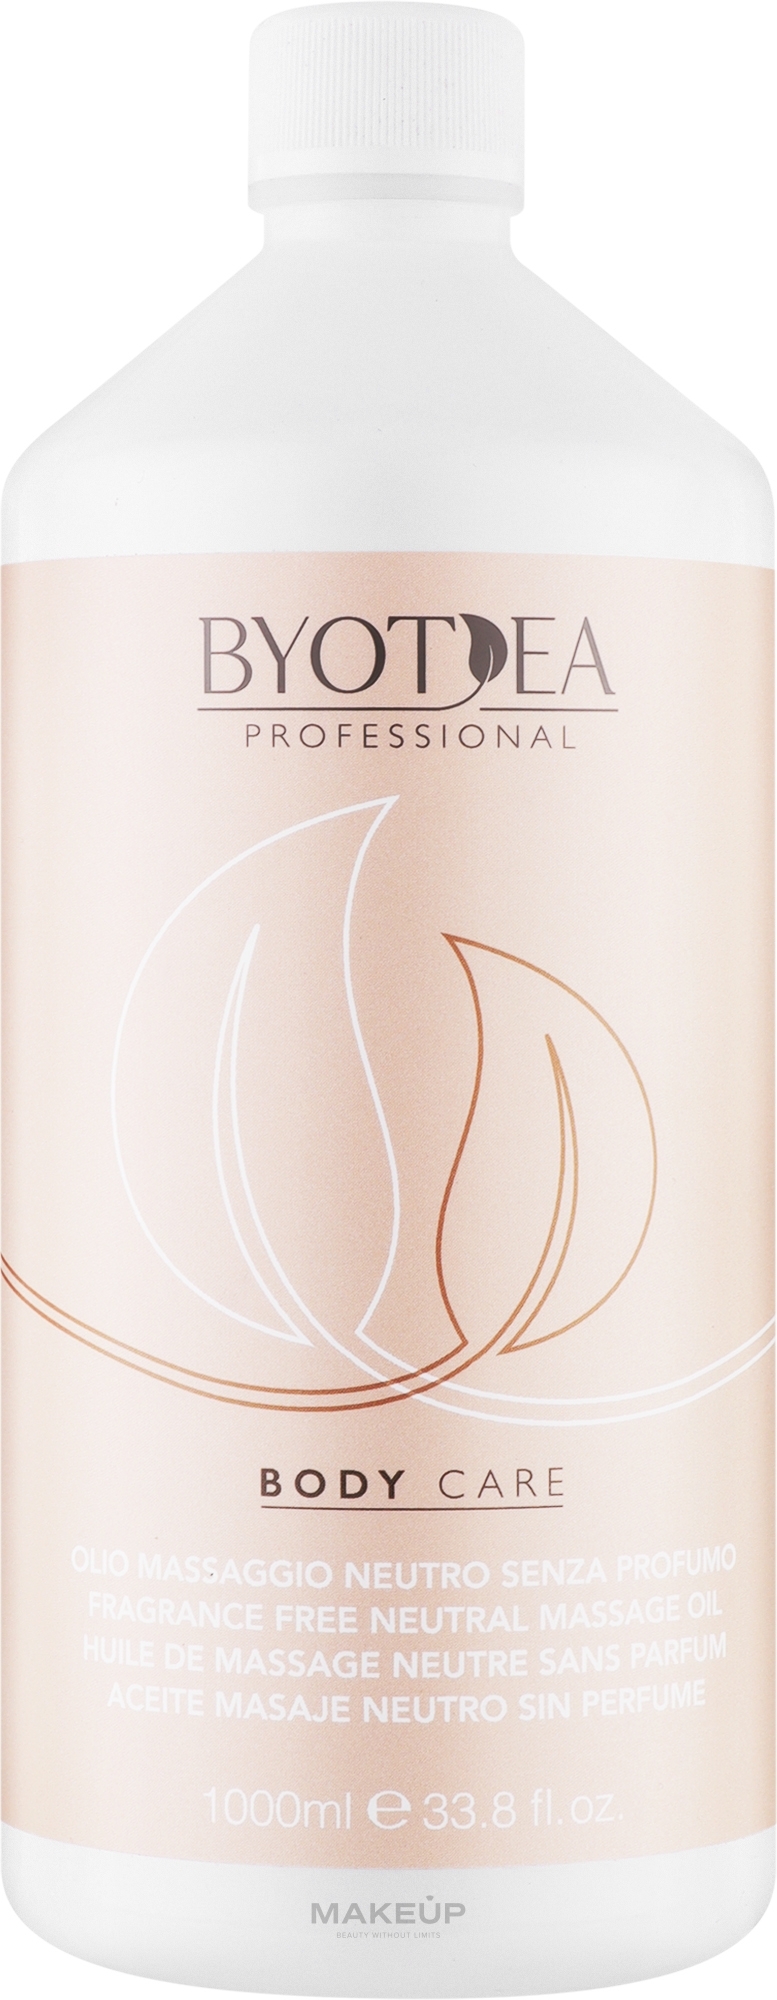 Масло для масажу нейтральне без запаху - Byothea Body Care Fragrance Free Neutral Massage Oil — фото 1000ml